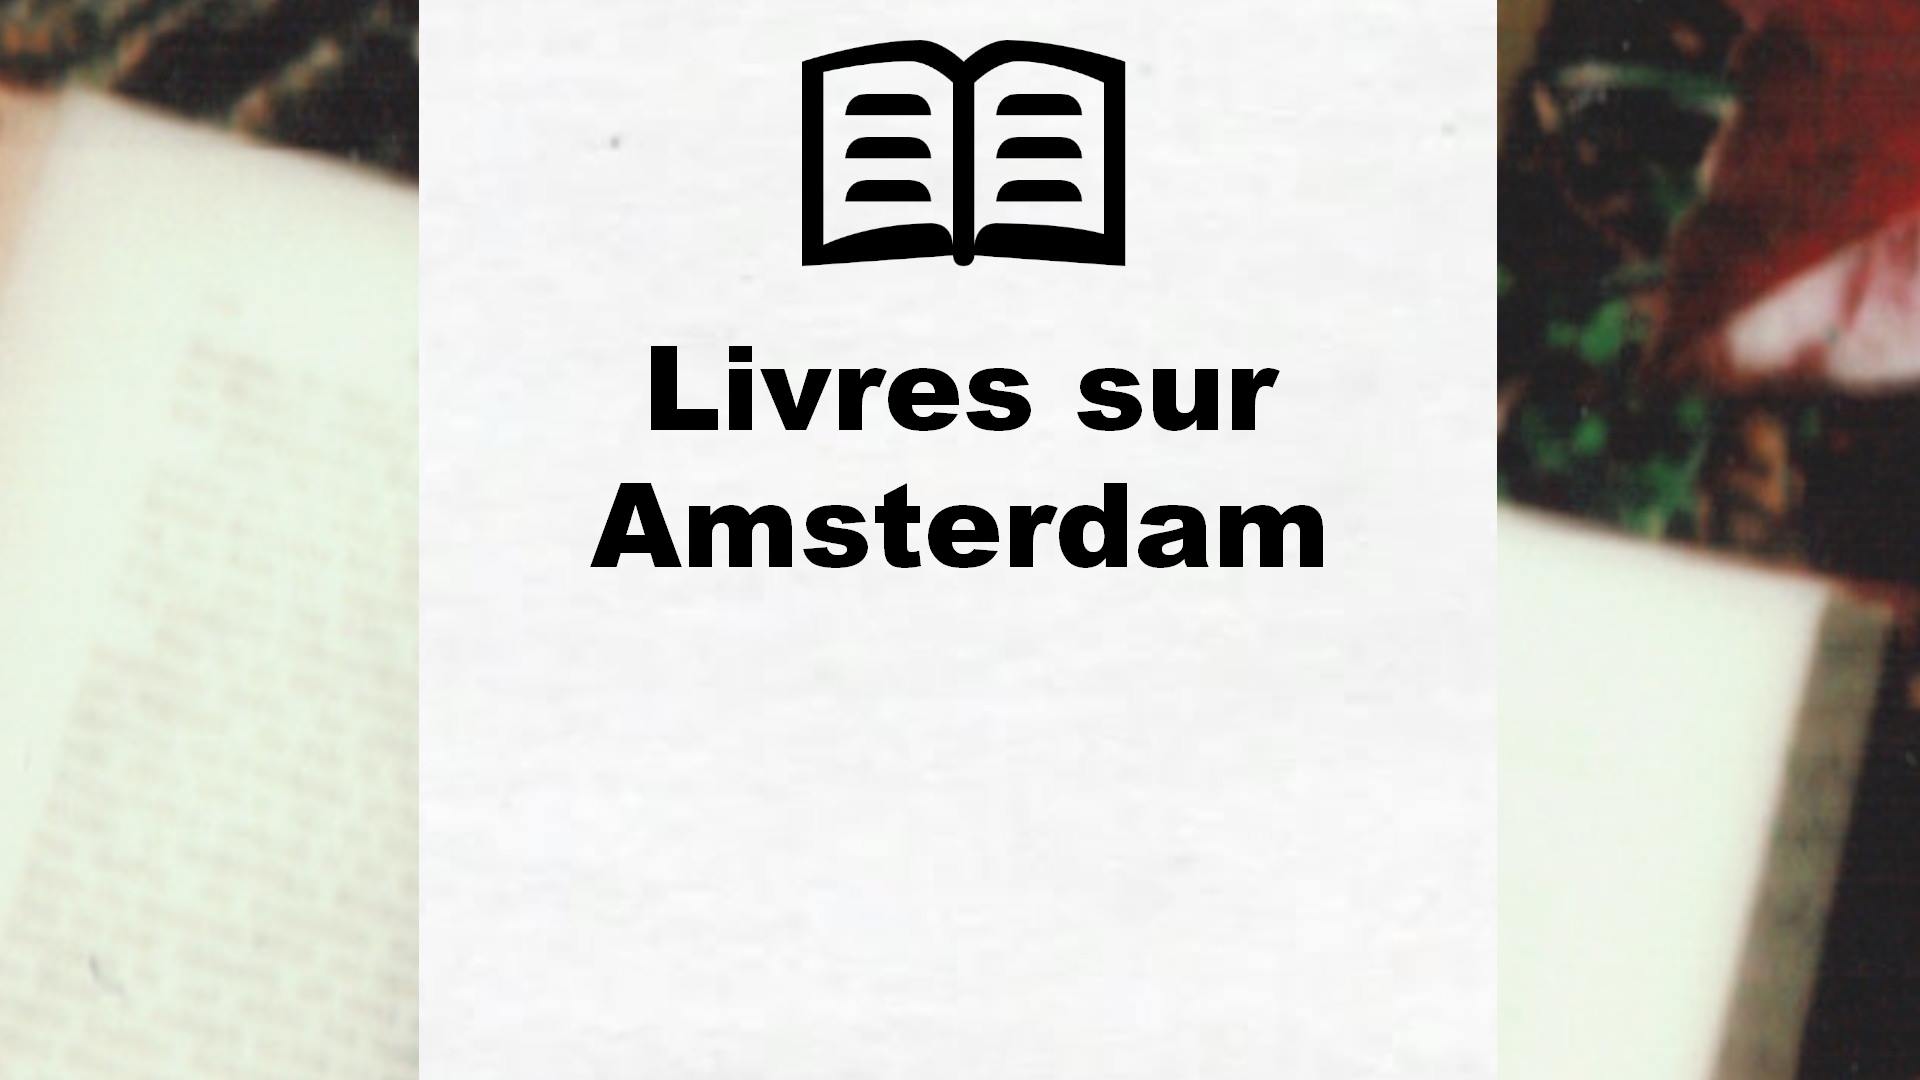 Livres sur Amsterdam